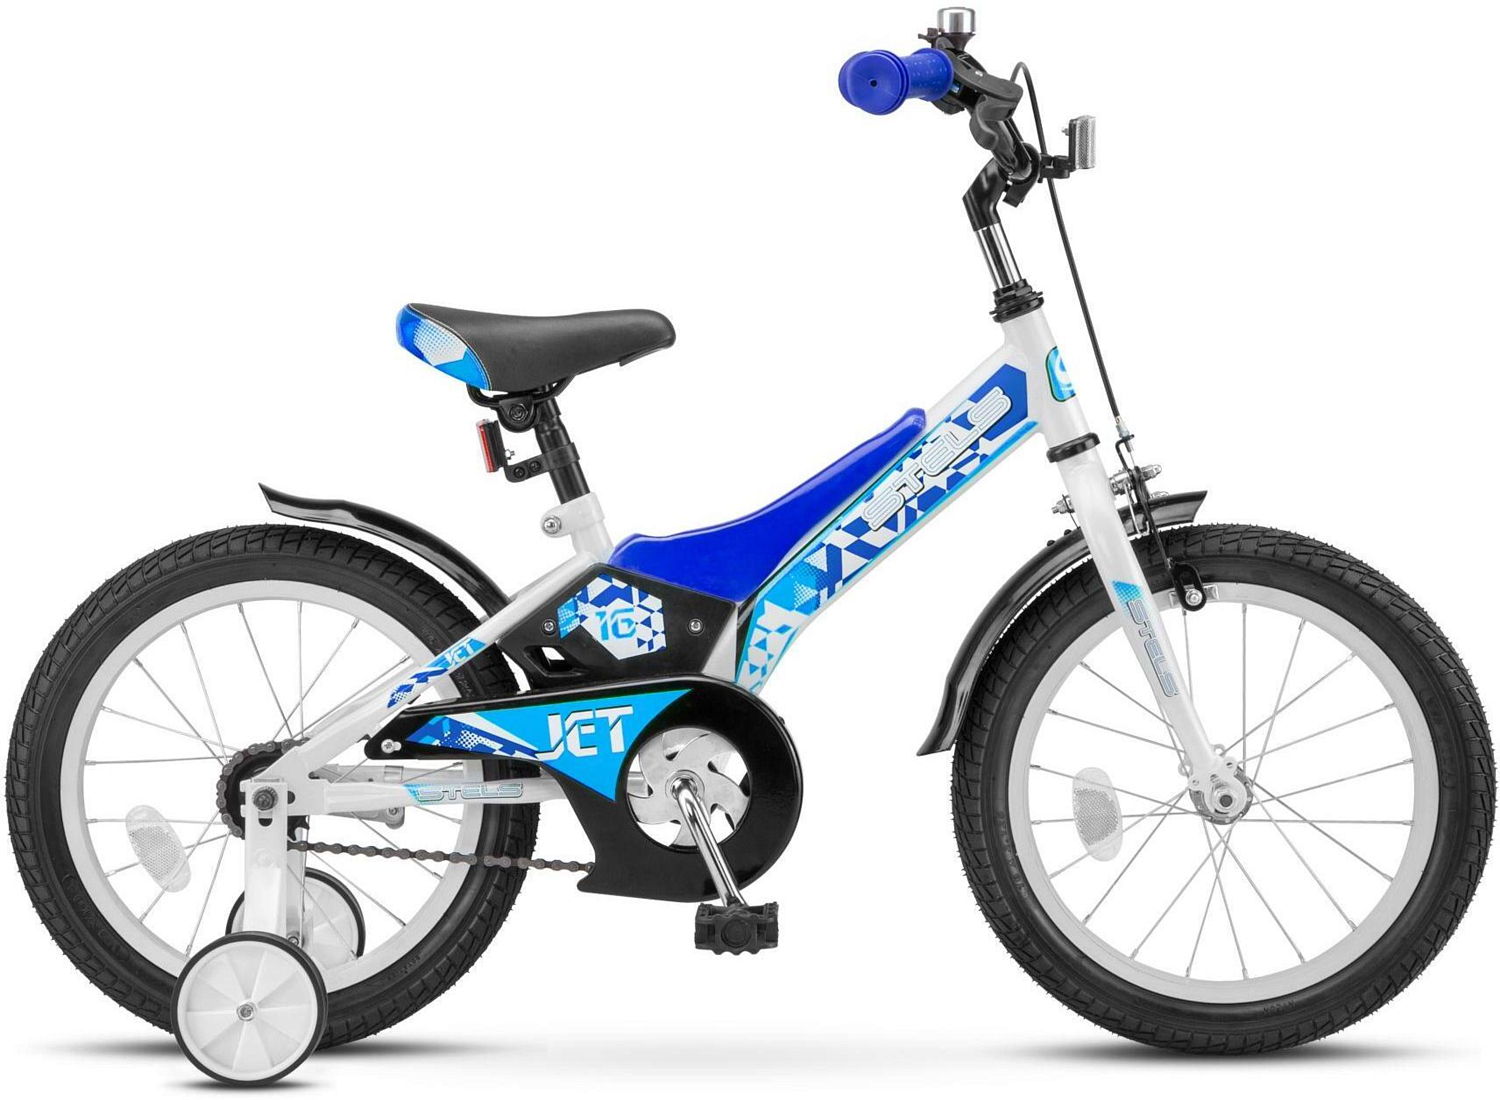 Велосипед Stels Jet 16 Z010 2019 Белый/Синий